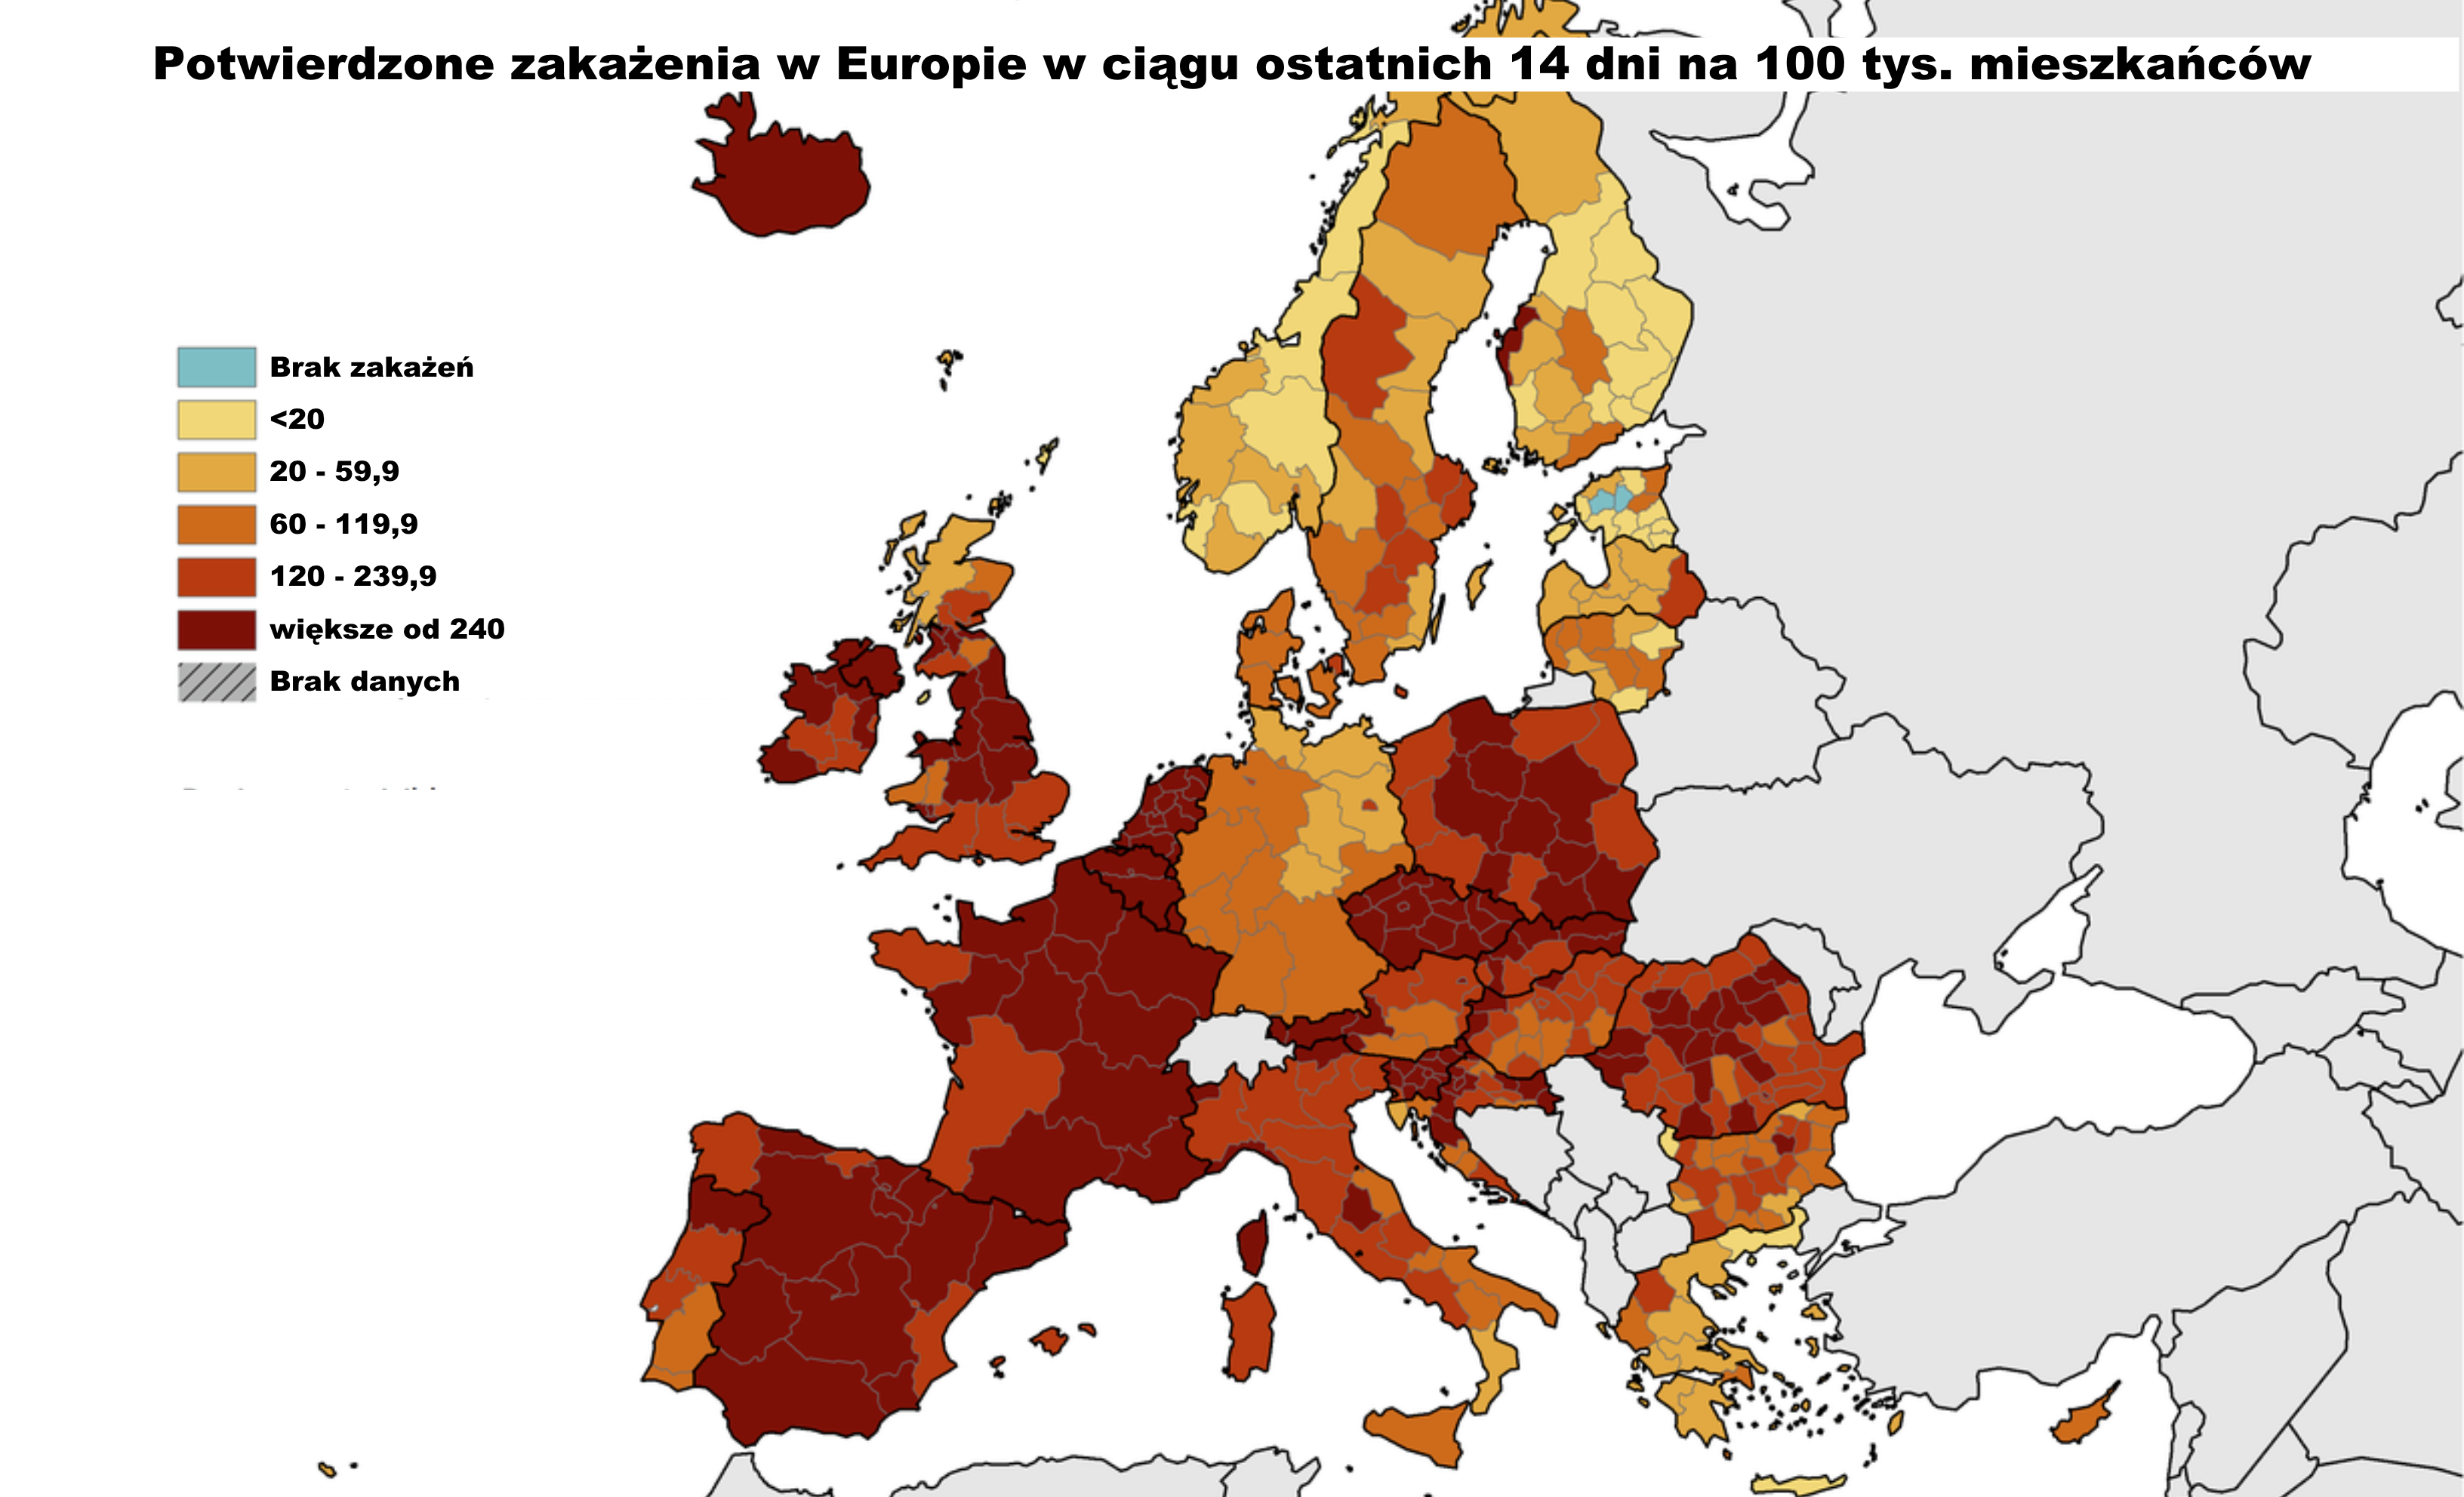 Mapa zakażeń Covid-19 w regionach Europy. Źródło: Europejskie Centrum ds. Zapobiegania i Kontroli Chorób